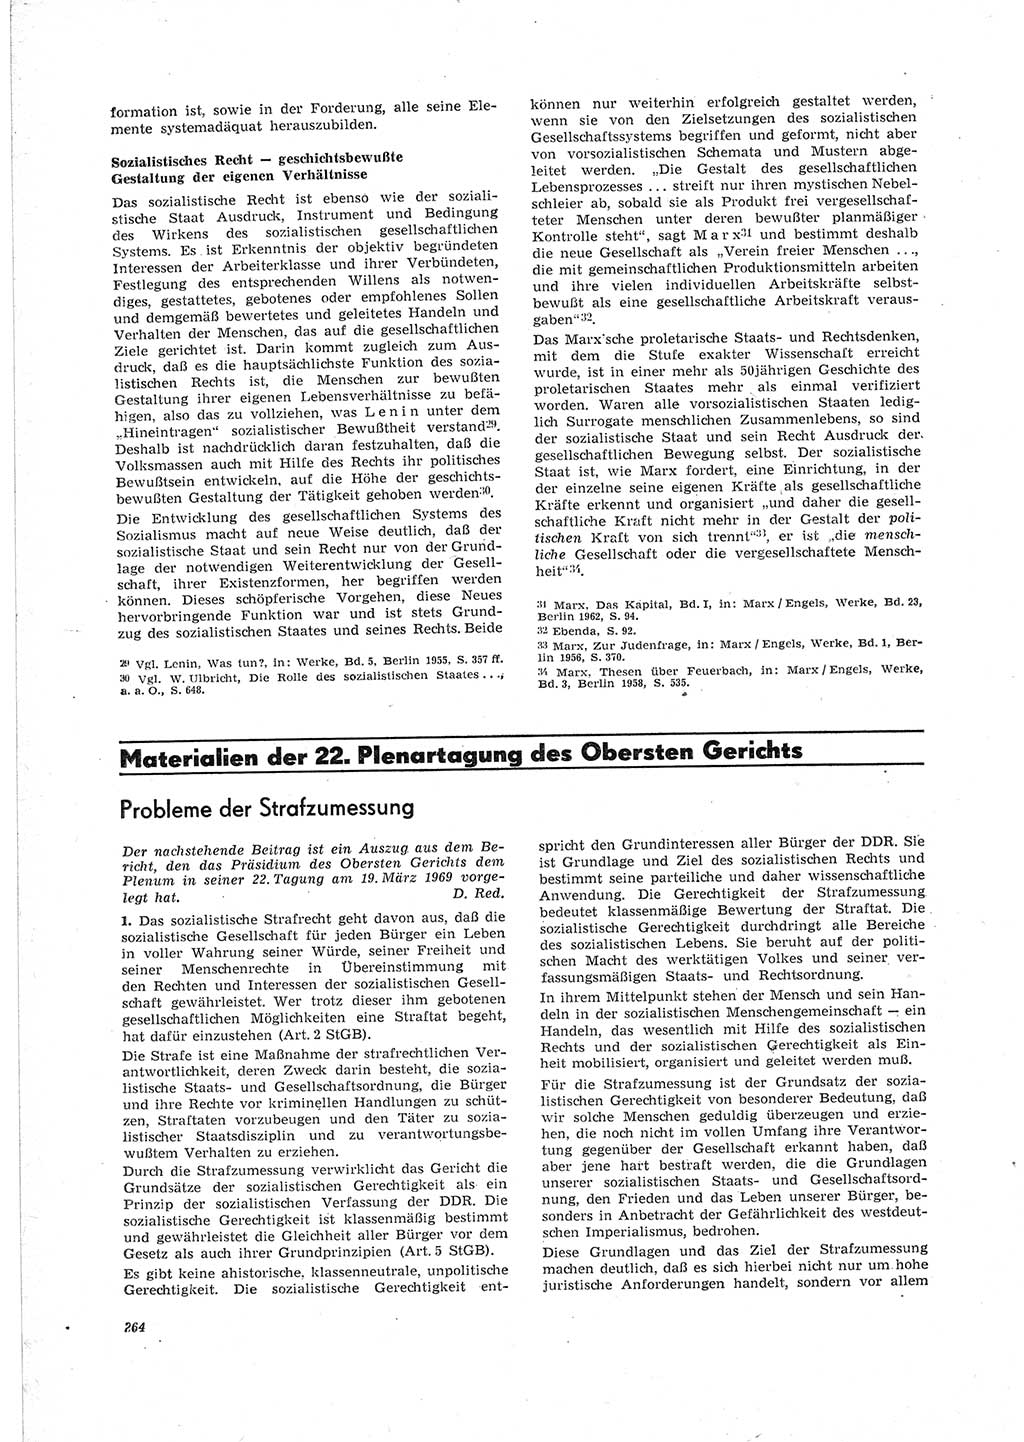 Neue Justiz (NJ), Zeitschrift für Recht und Rechtswissenschaft [Deutsche Demokratische Republik (DDR)], 23. Jahrgang 1969, Seite 264 (NJ DDR 1969, S. 264)